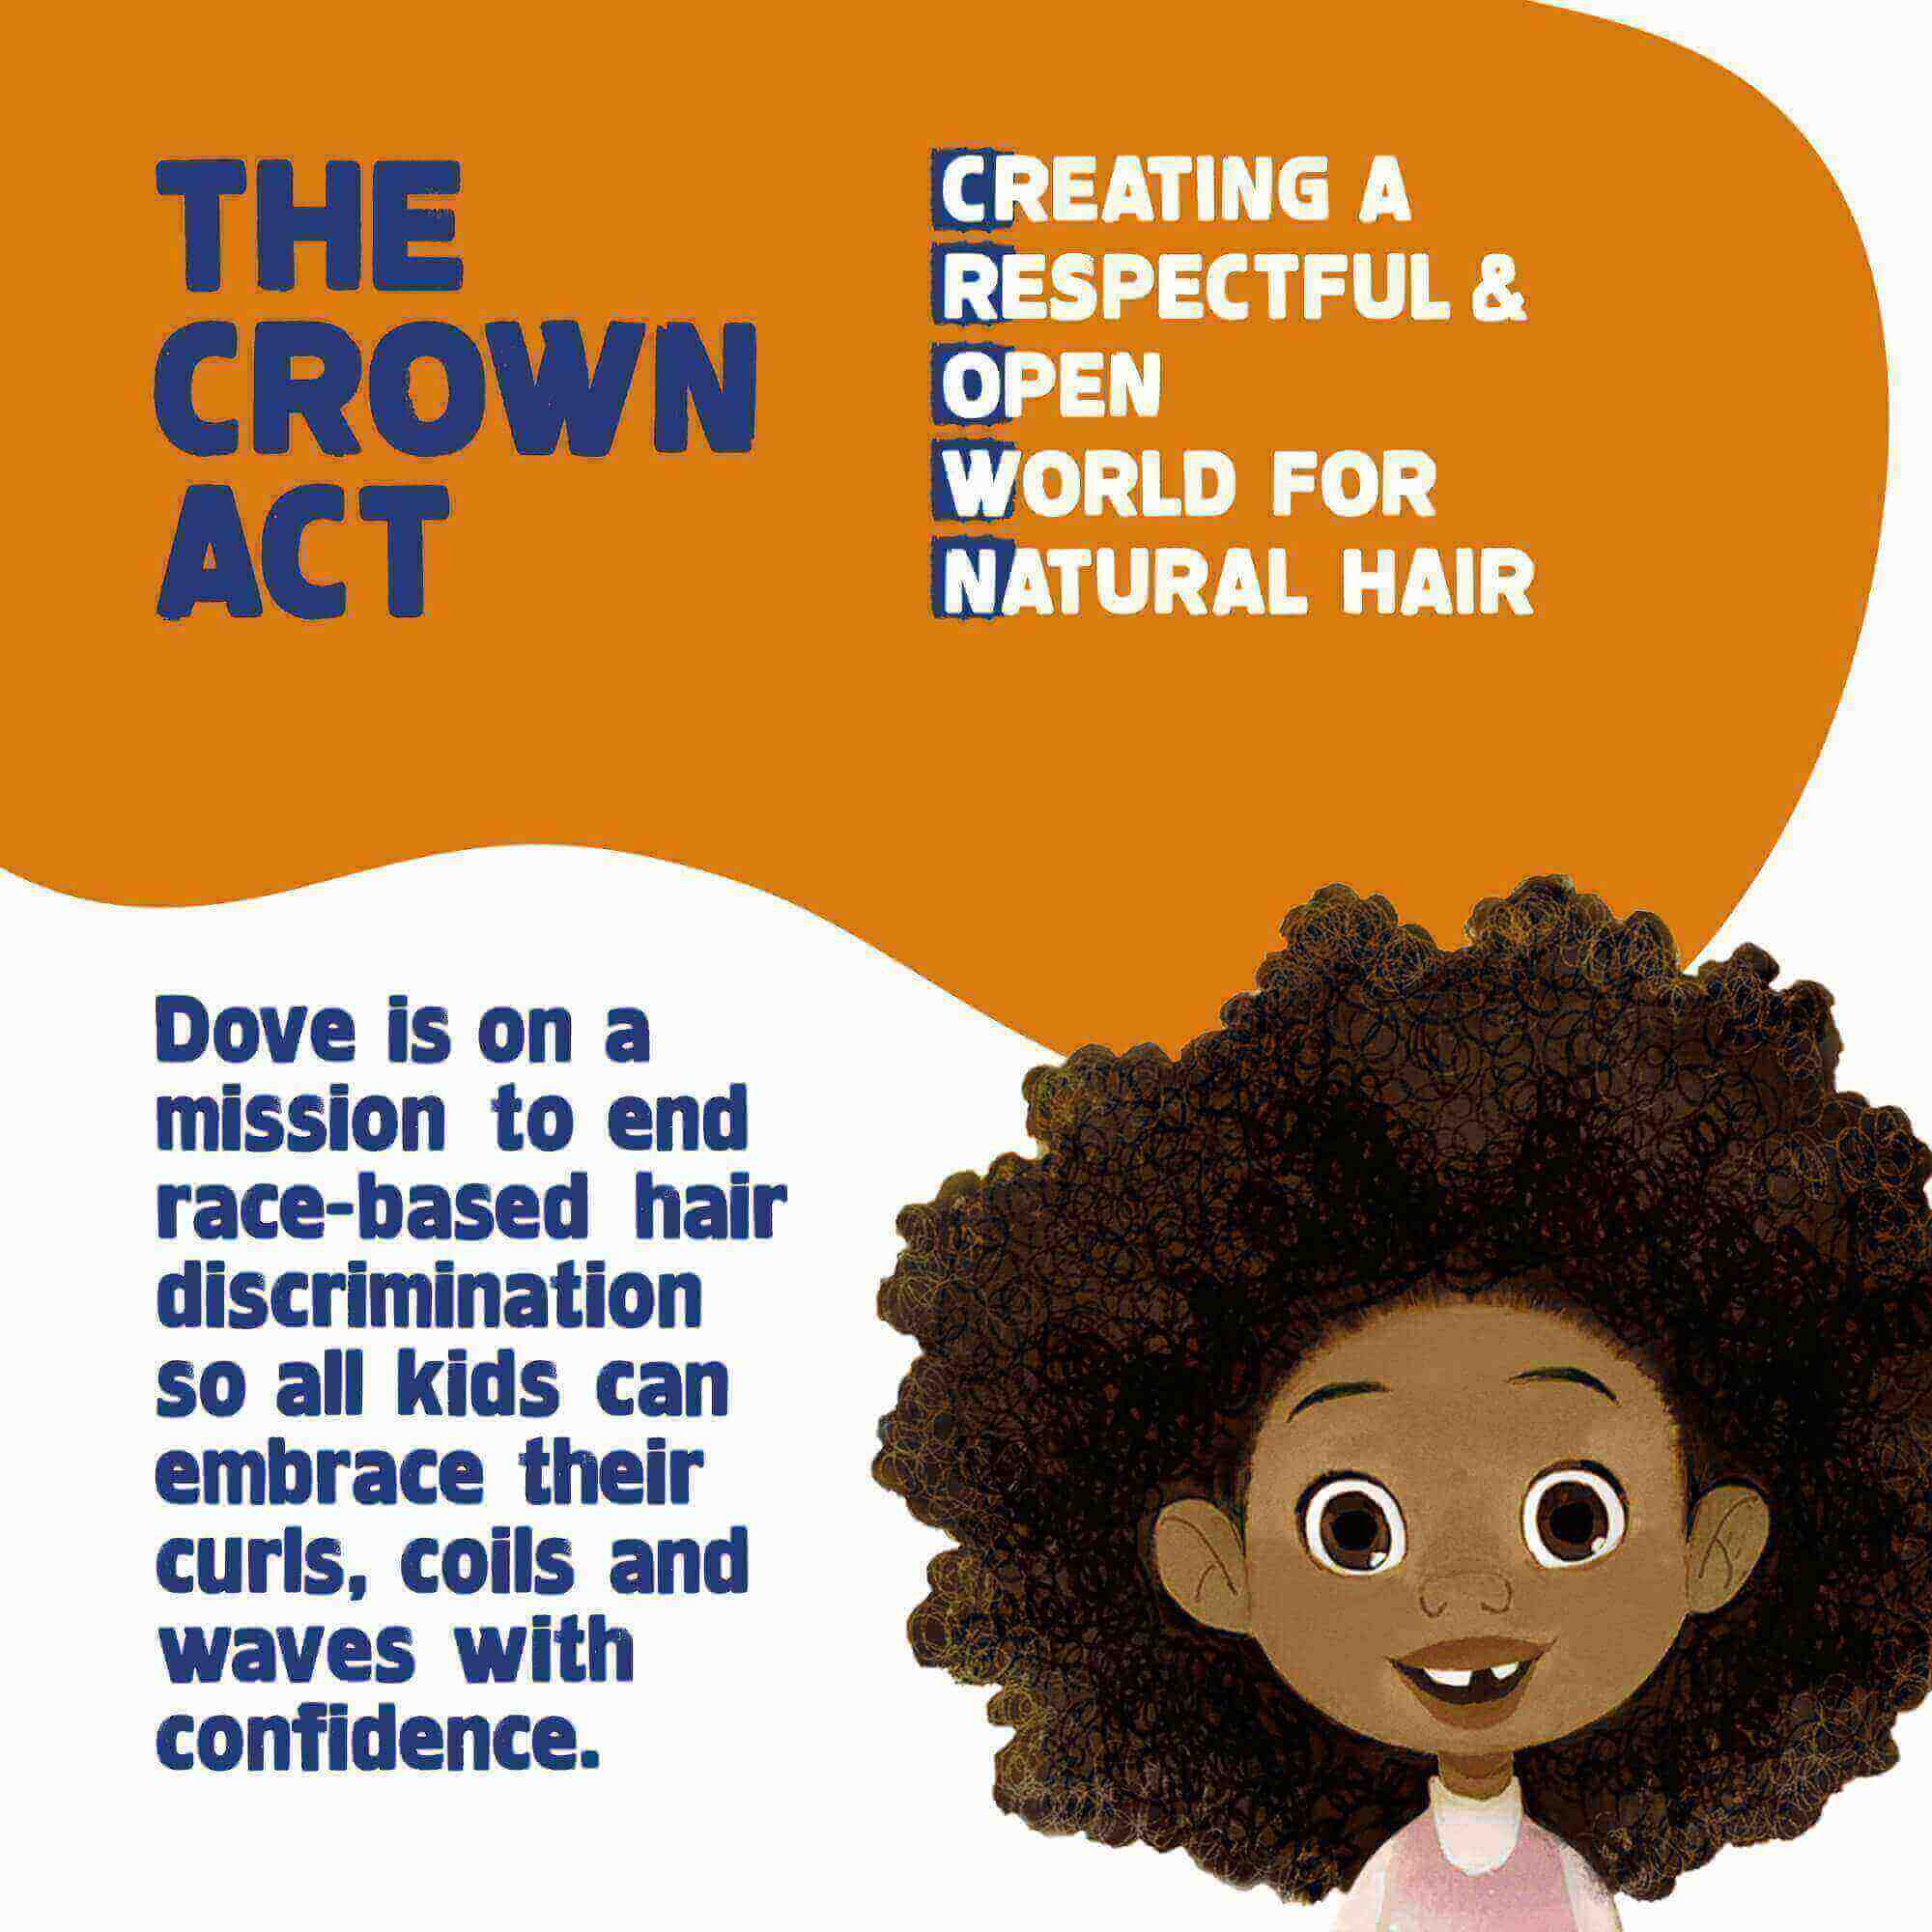 Lời ủng hộ của Dove cho Đạo luật Crown khi tung ra dòng sản phẩm này.